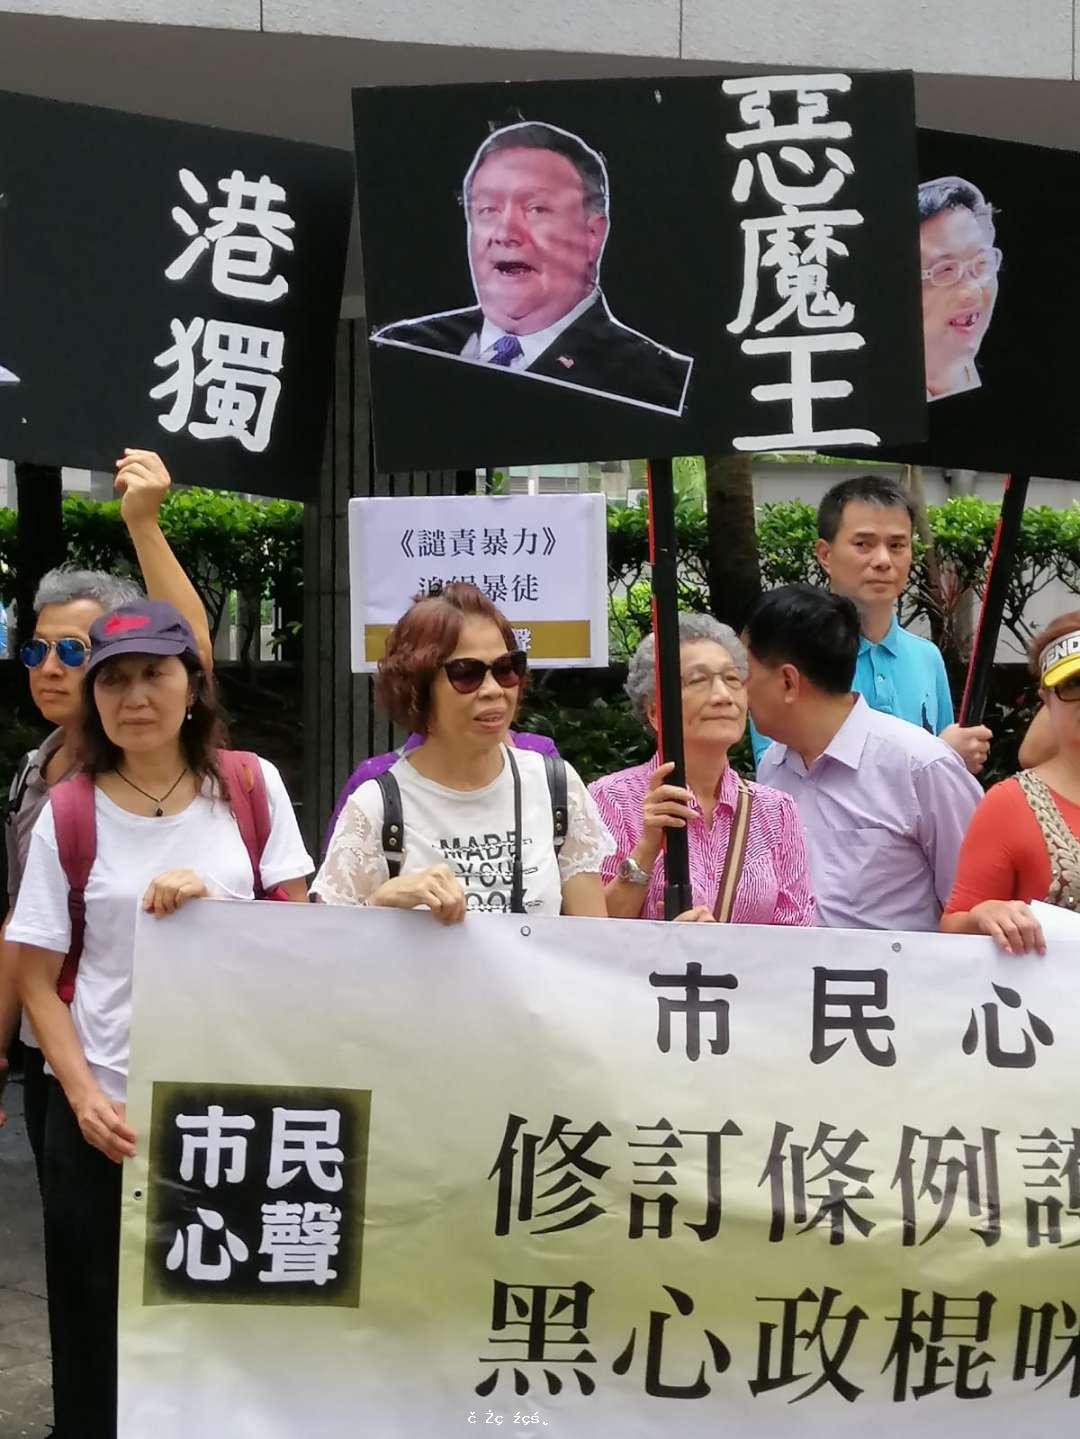 多個團體赴總領館遞抗議信 批用「顏色革命」手段撕裂香港